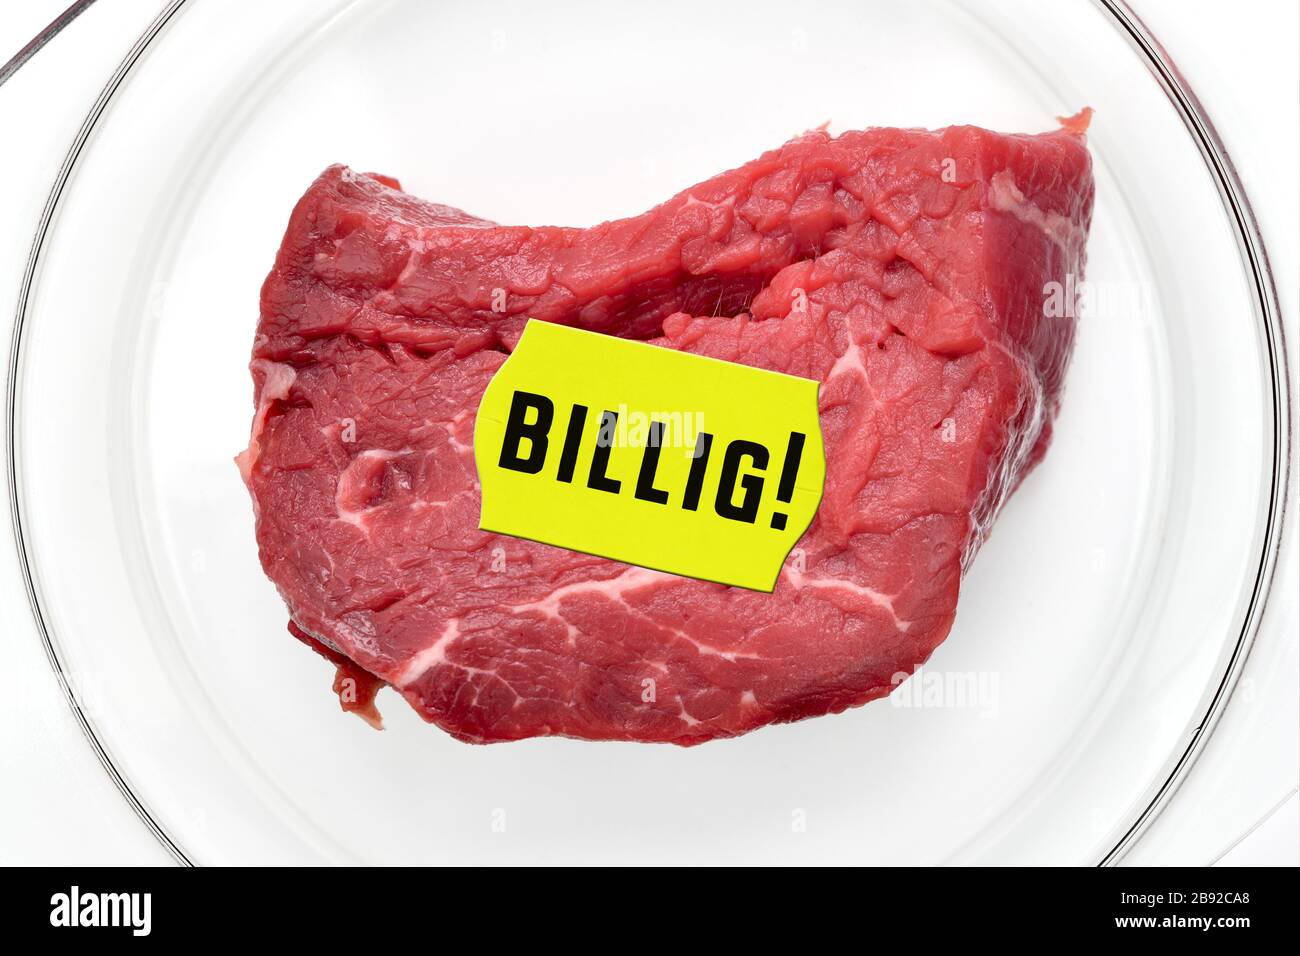 FOTOMONTAGE, Fleisch mit Preisschild und dem Label billiges, symbolisches Foto für billiges Fleisch, FOTOMONTAGE, Fleisch mit Preisetikett und der Auftrag billi Stockfoto